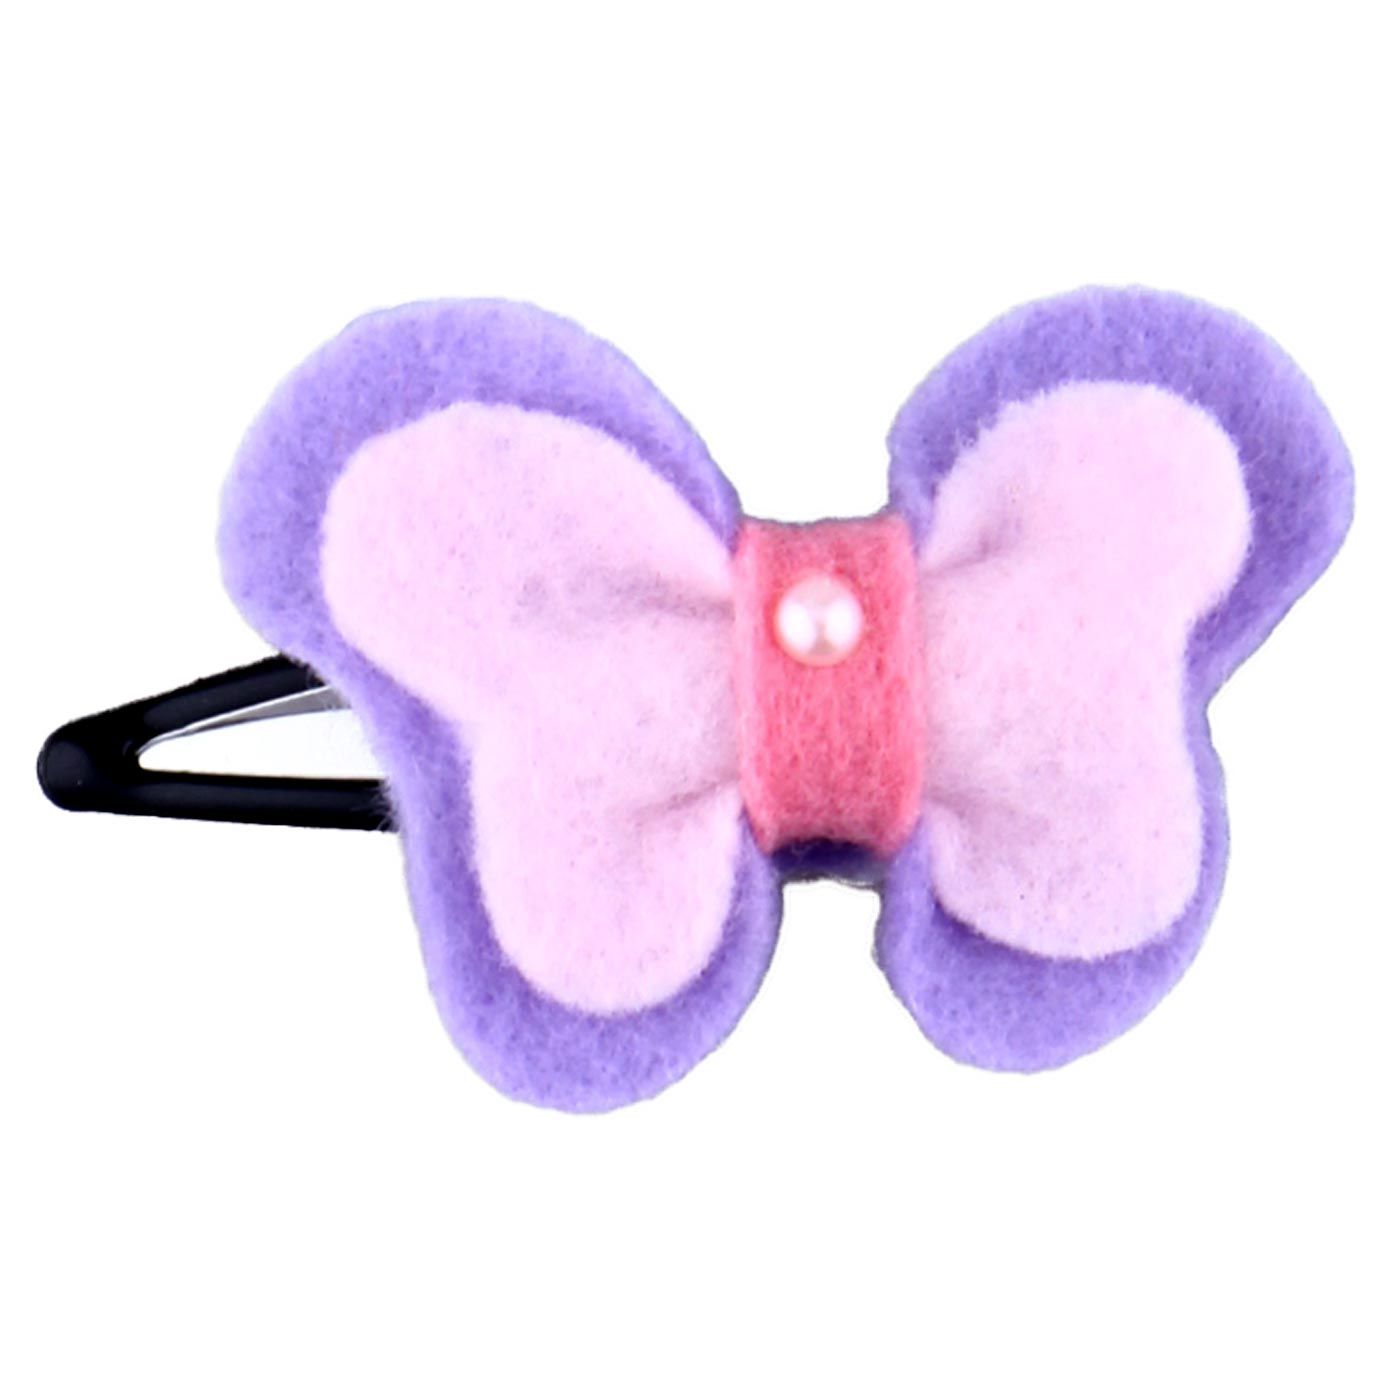 Bebecroc Felt Butterfly Snap Clip Pale Lilac&Pale Pink - 2